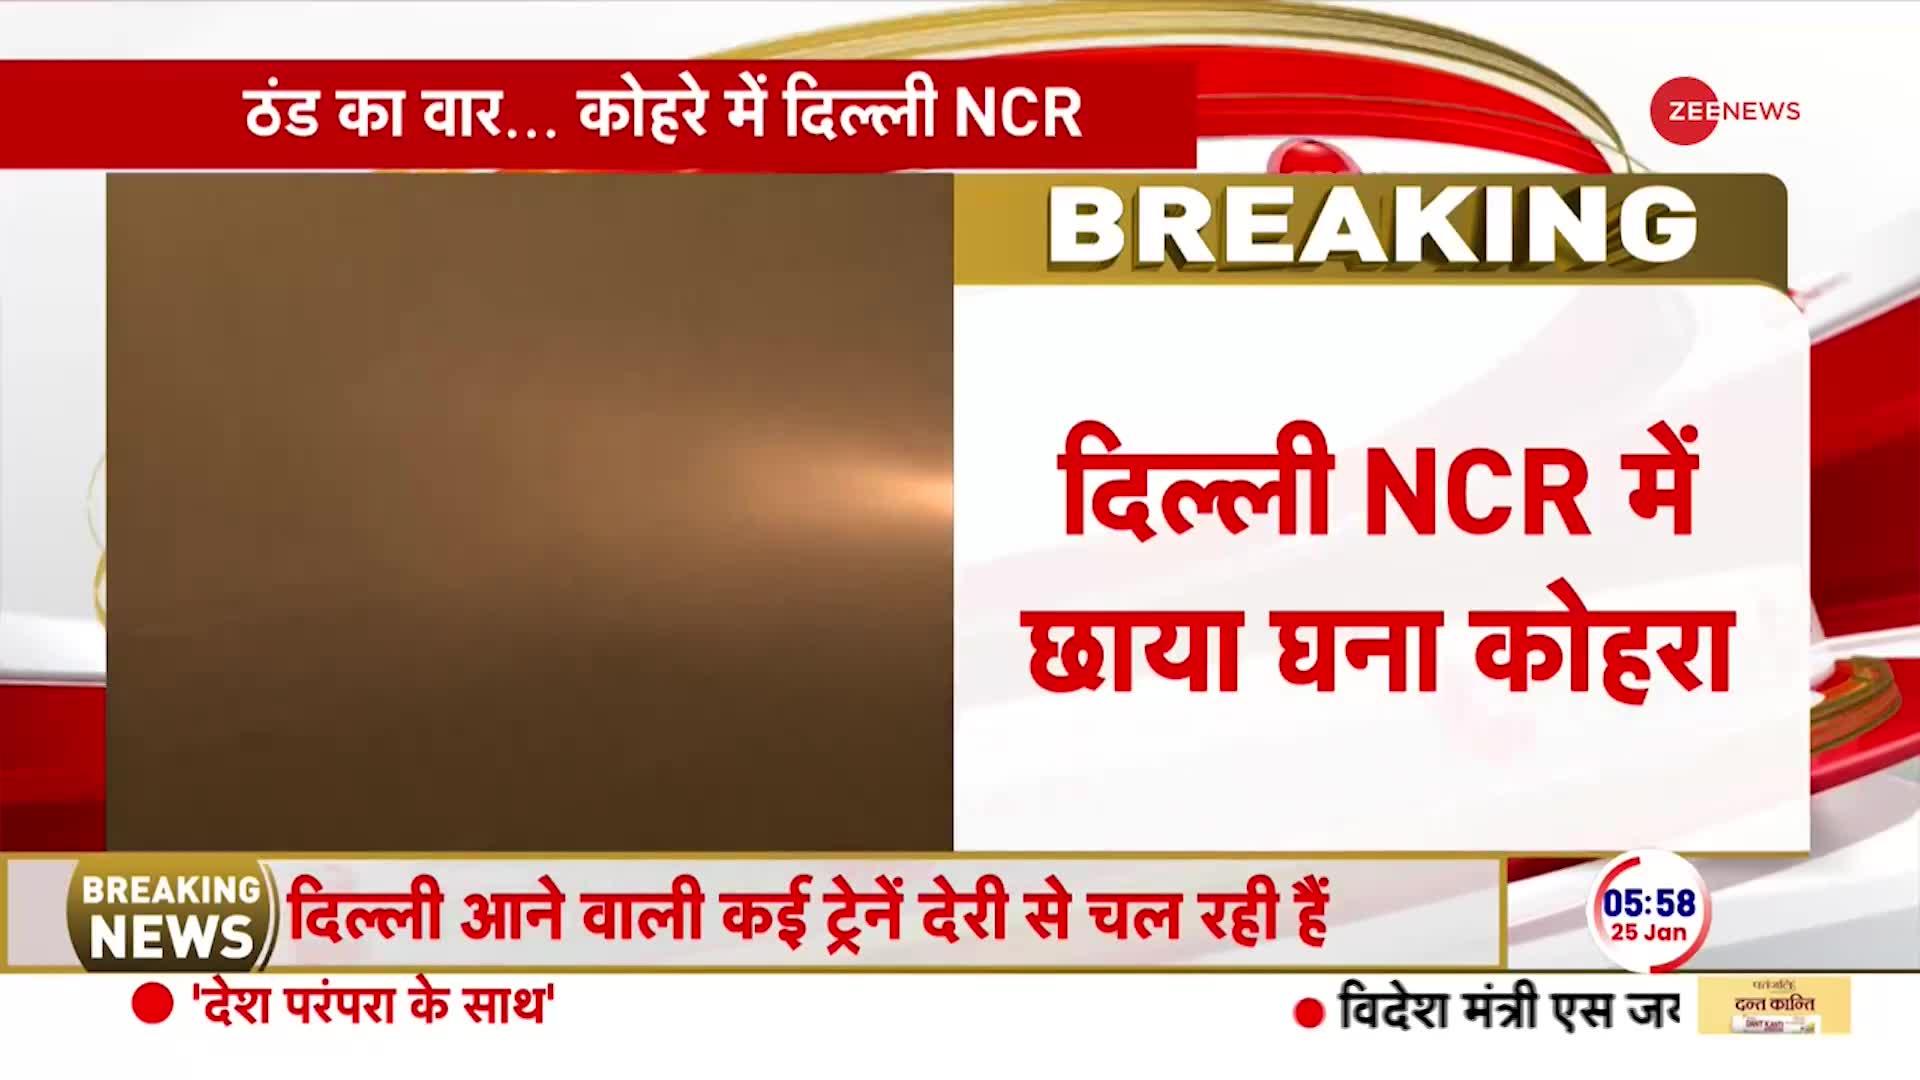 Delhi-NCR Weather: दिल्ली NCR में छाया घना कोहरा, कई रास्तों पर विज़िबिलिटी लगभग शून्य